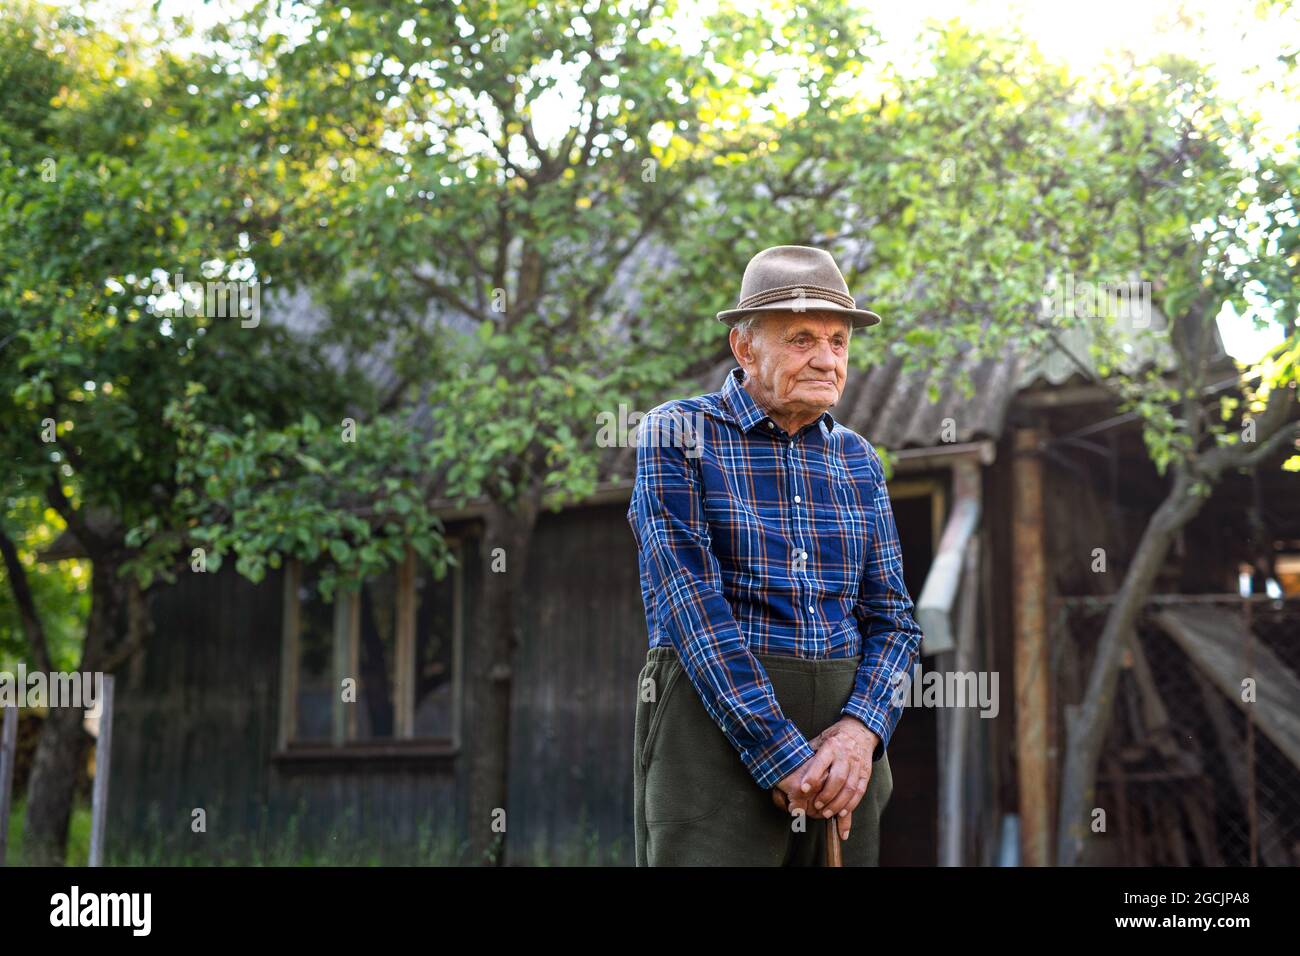 Portrait of elderly man standing outdoors in garden, resting. Stock Photo